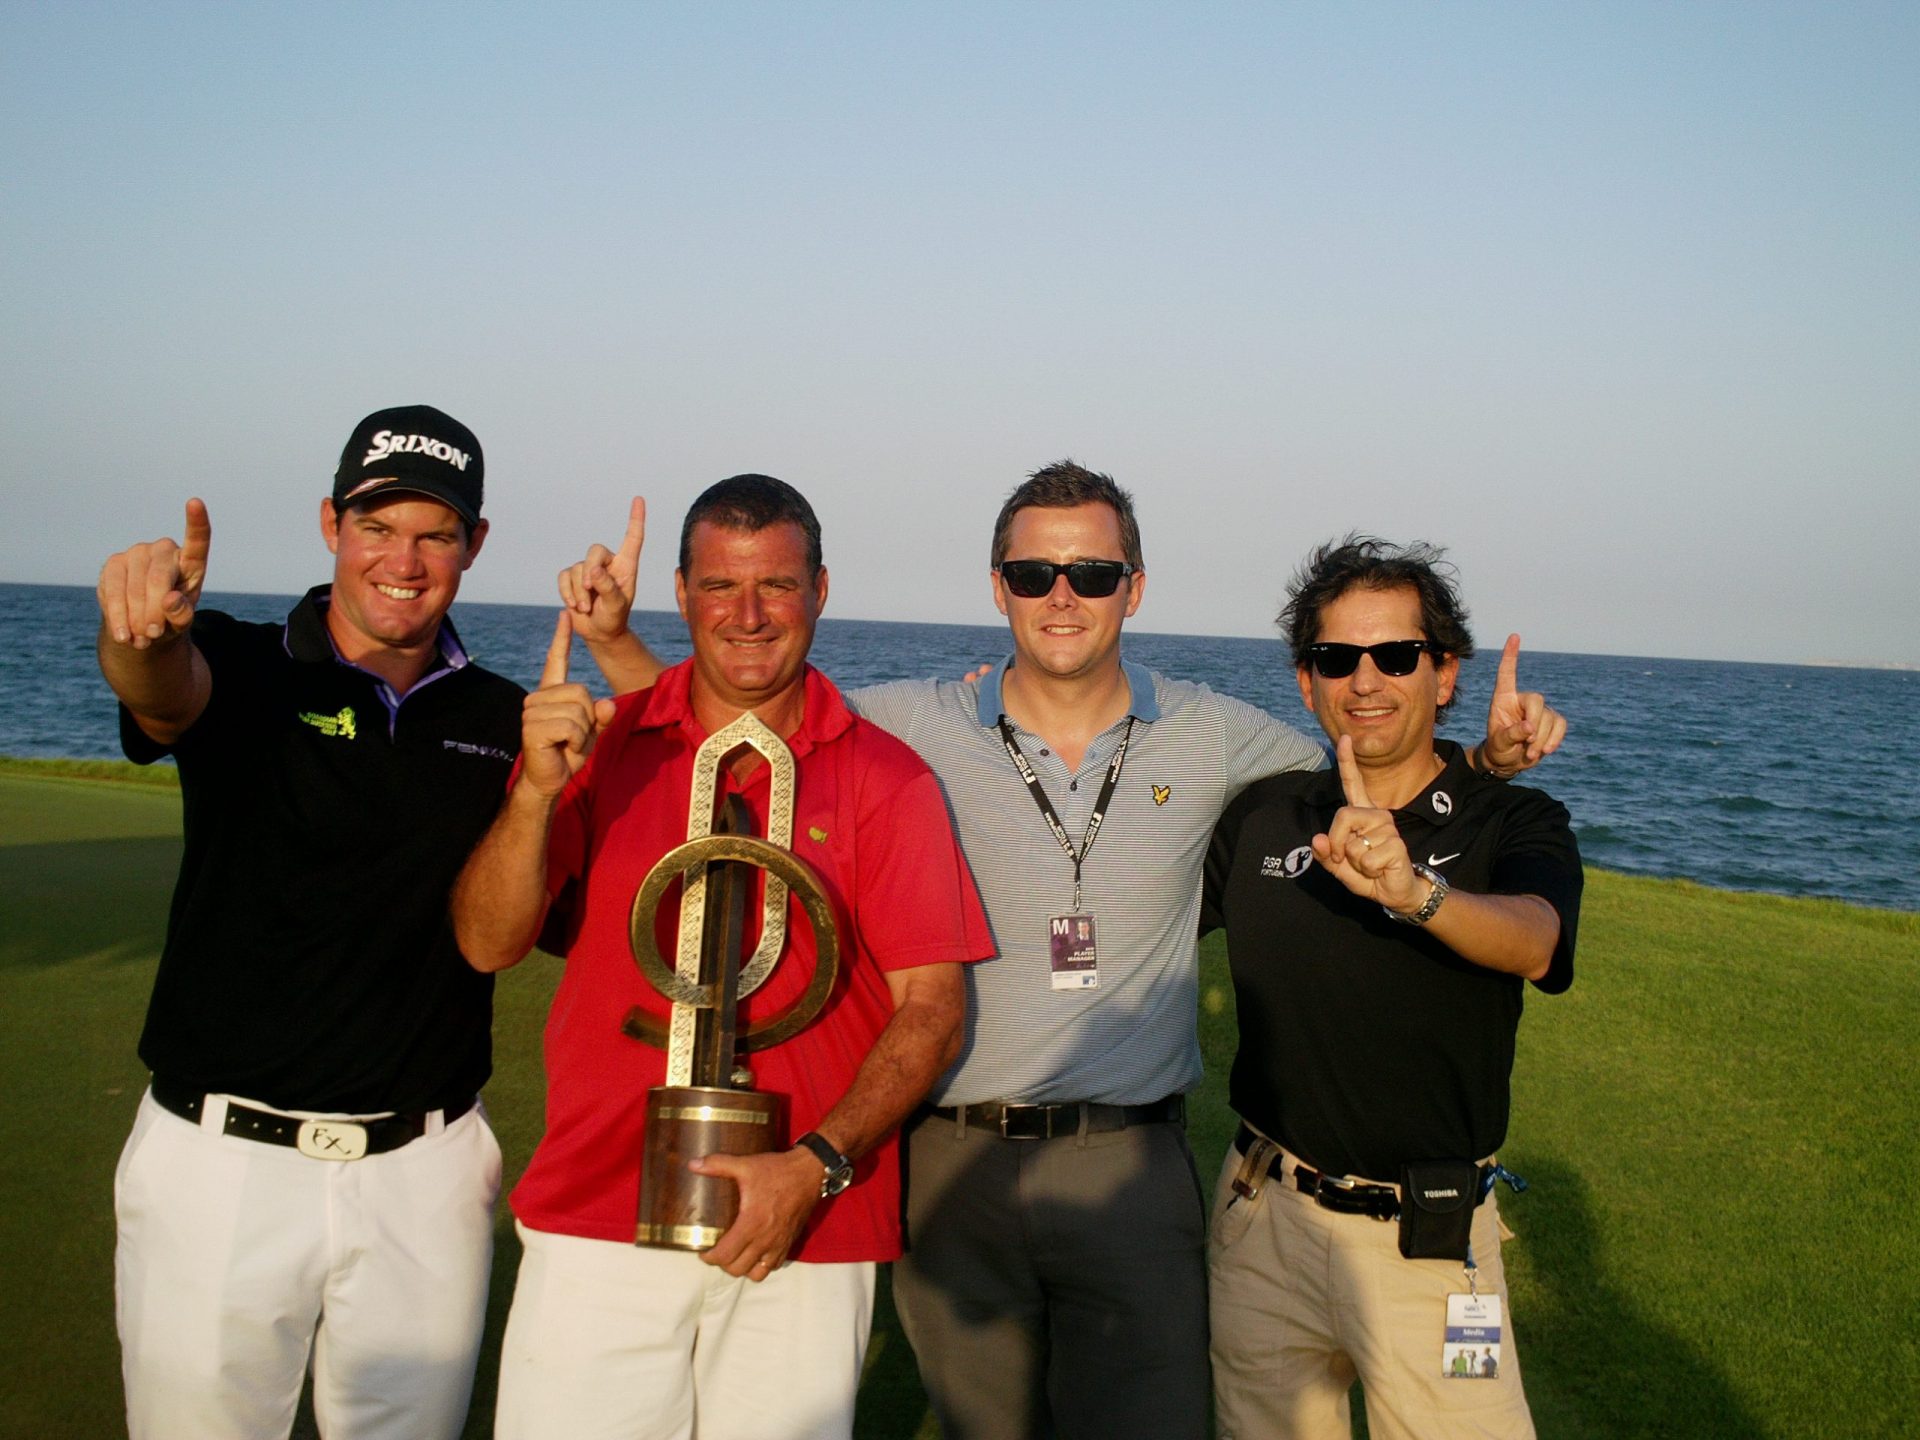 Golfe: Ricardo Melo Gouveia no Top-100 Mundial e no Top-40 Olímpico